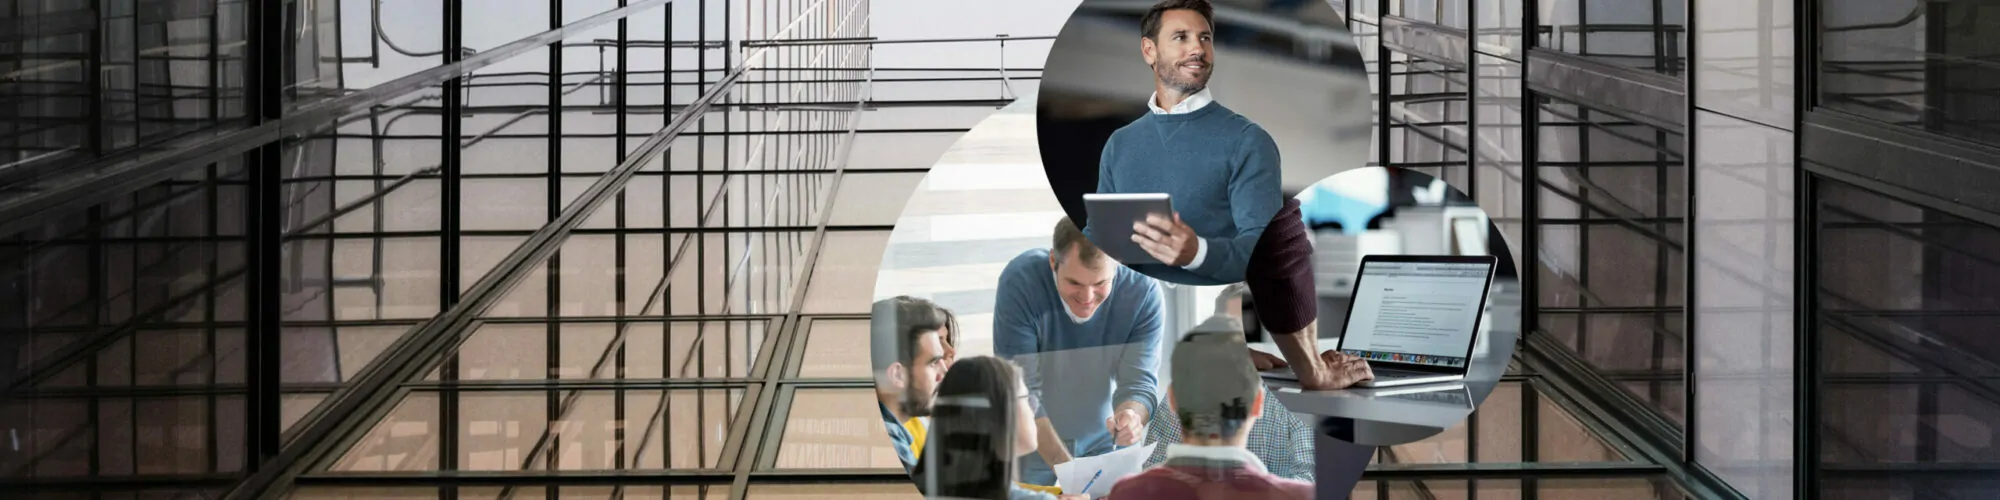 Konsolidierung mit SAP, Bild einer Gruppe von Menschen, die gemeinsam an einer Besprechung teilnehmen, ein Laptop und Mann mit Tablet in der Hand, im Hintergrund die Fassade eines Gebäudes